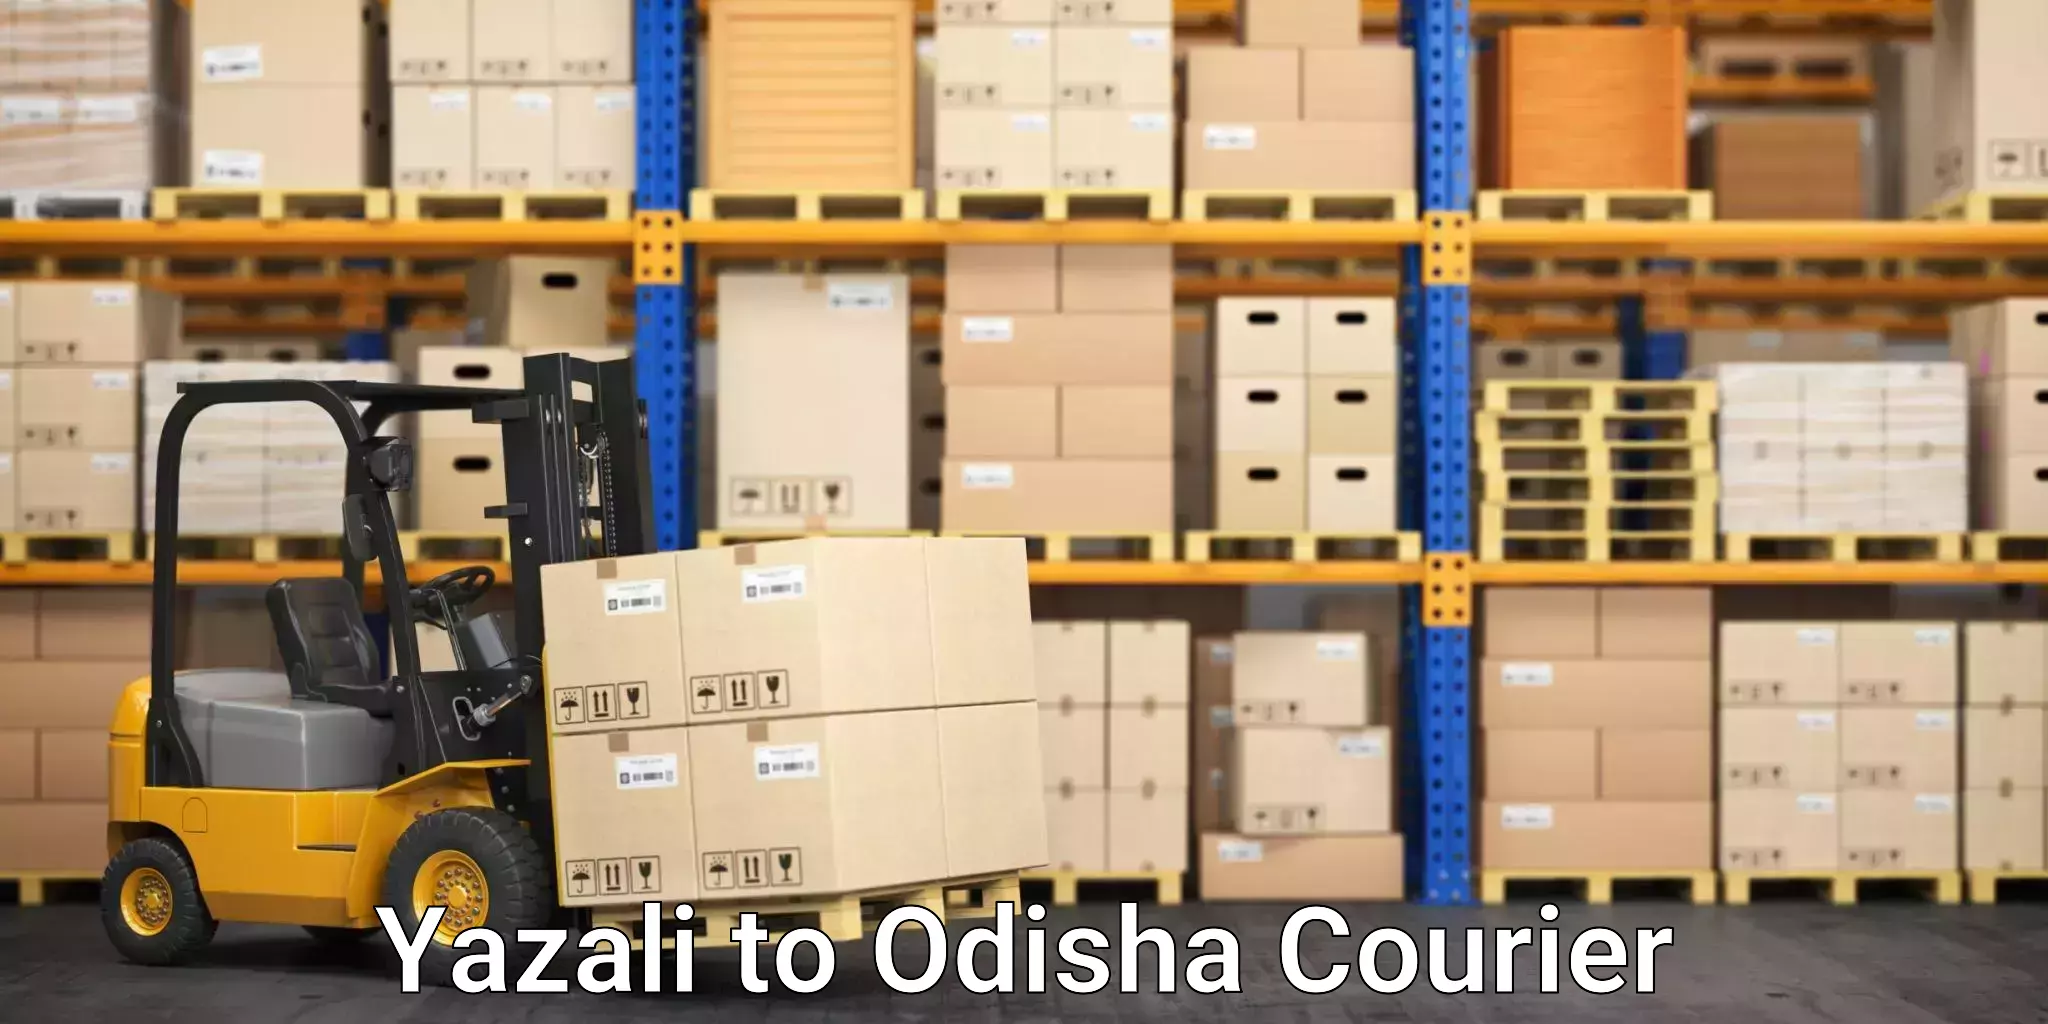 Courier service efficiency Yazali to Odisha